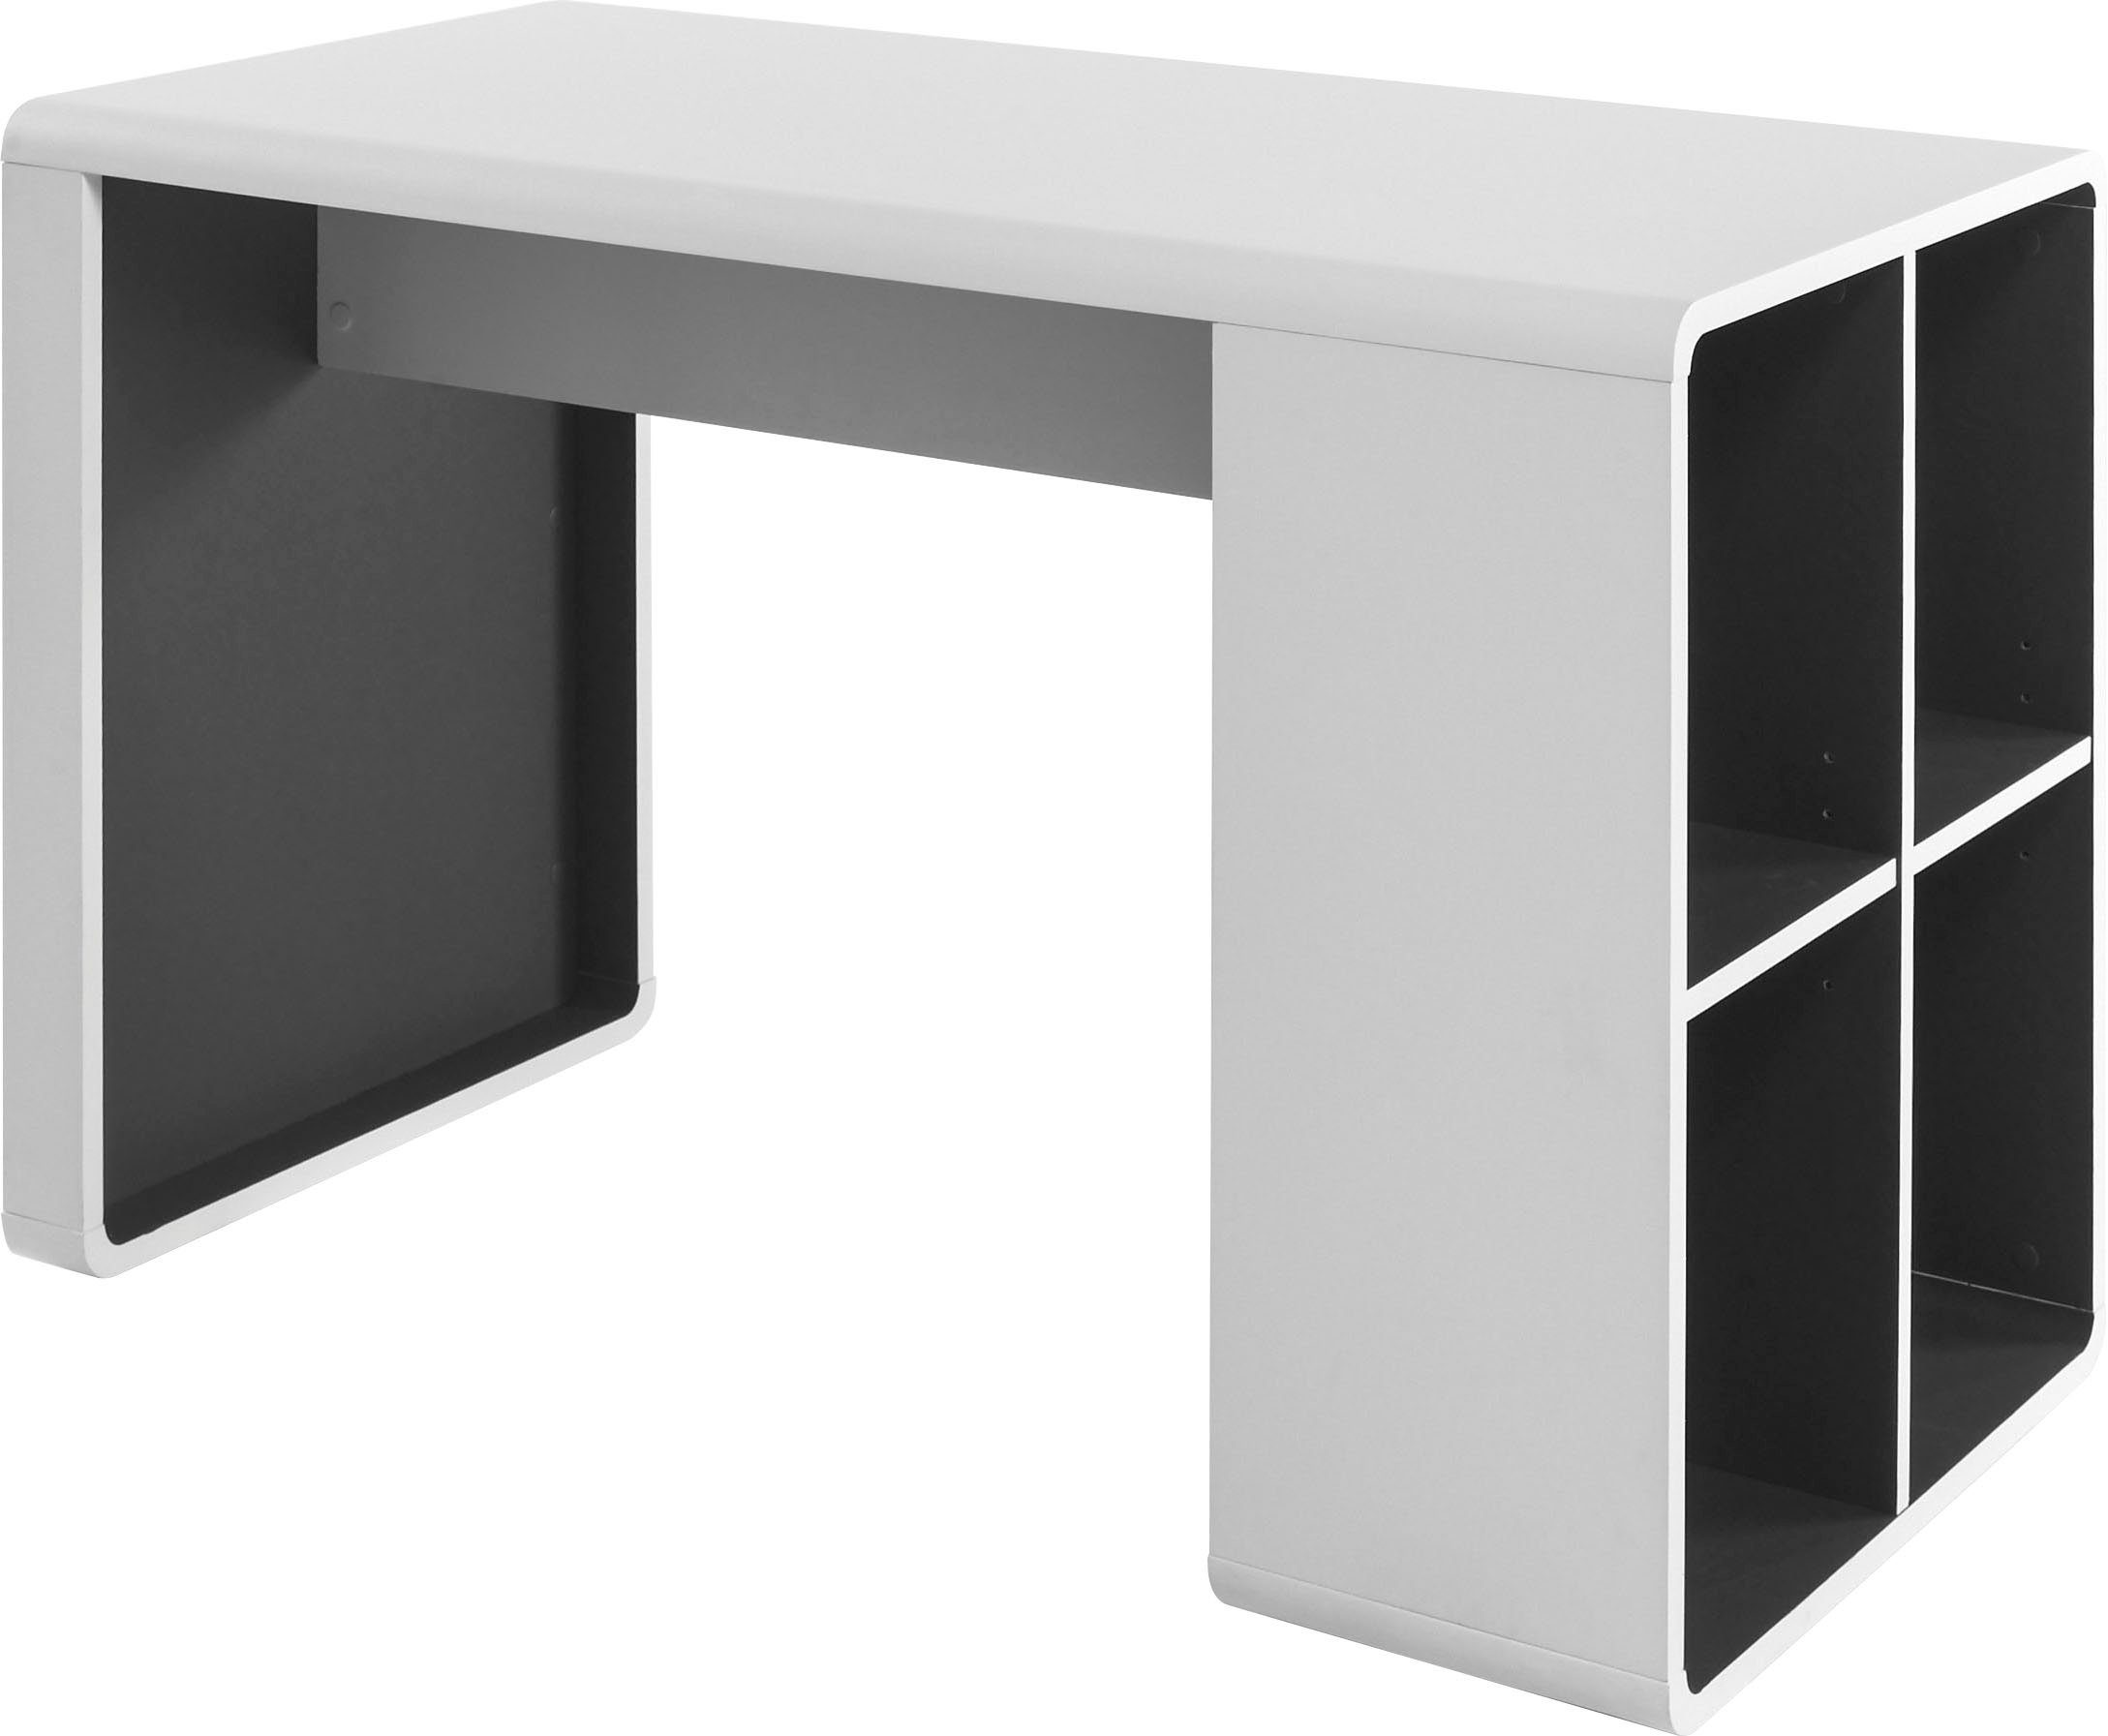 MCA furniture Schreibtisch Tadeo, weiß matt mit 4 offenen Fächer, Breite 119 cm